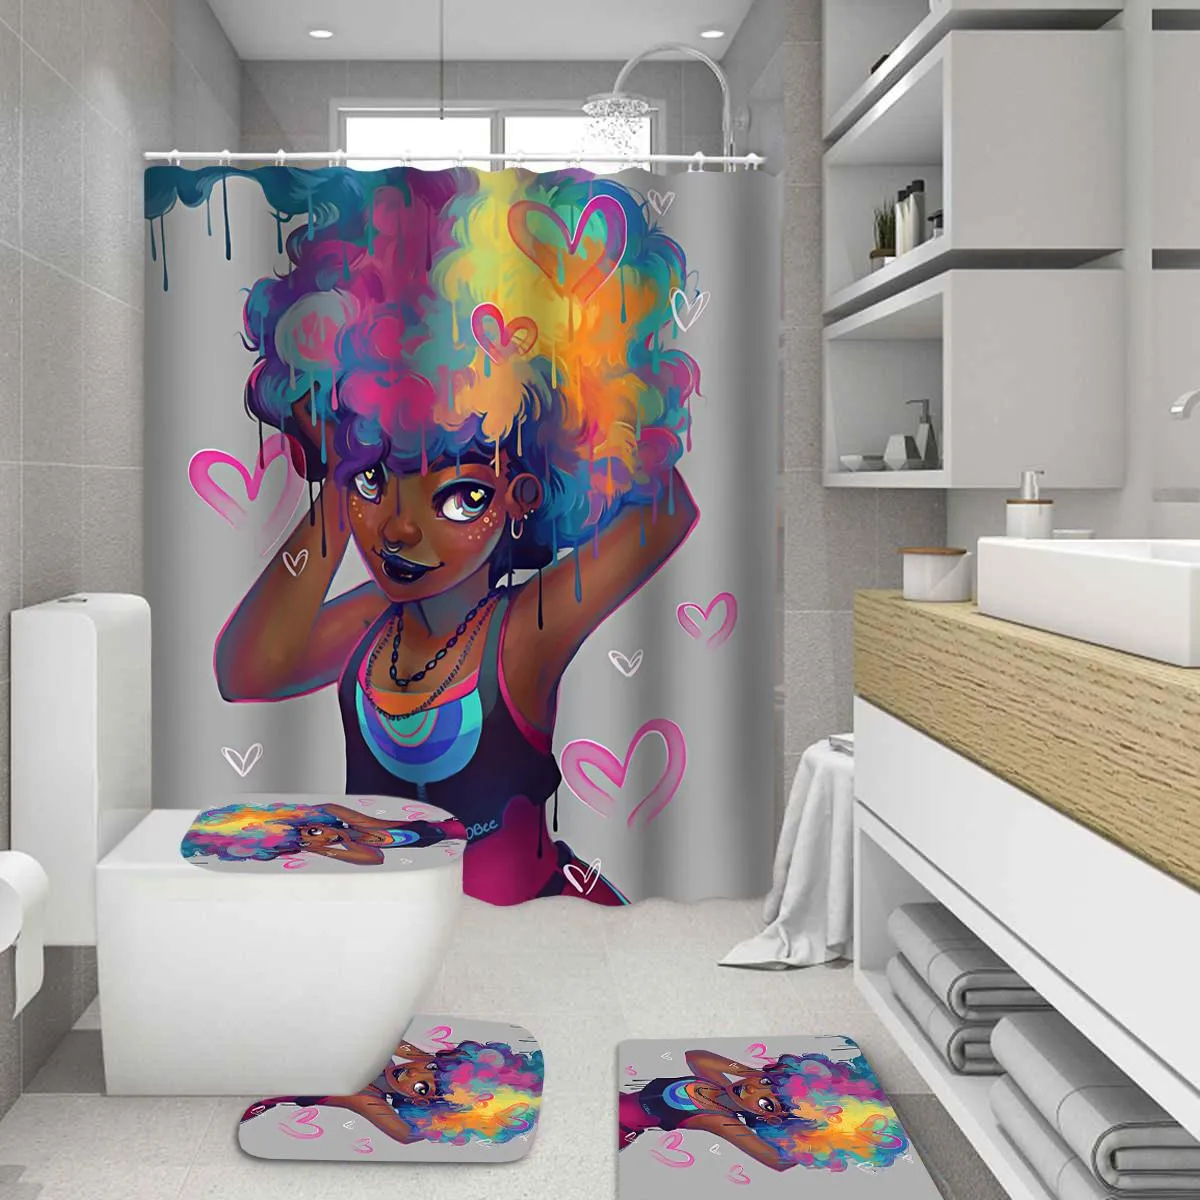 Шторы милые Лоли, африканские занавески для душа, афроамериканские женские женские цветные волосы, набор для ванной комнаты, нескользящие коврики, коврик для крышки унитаза